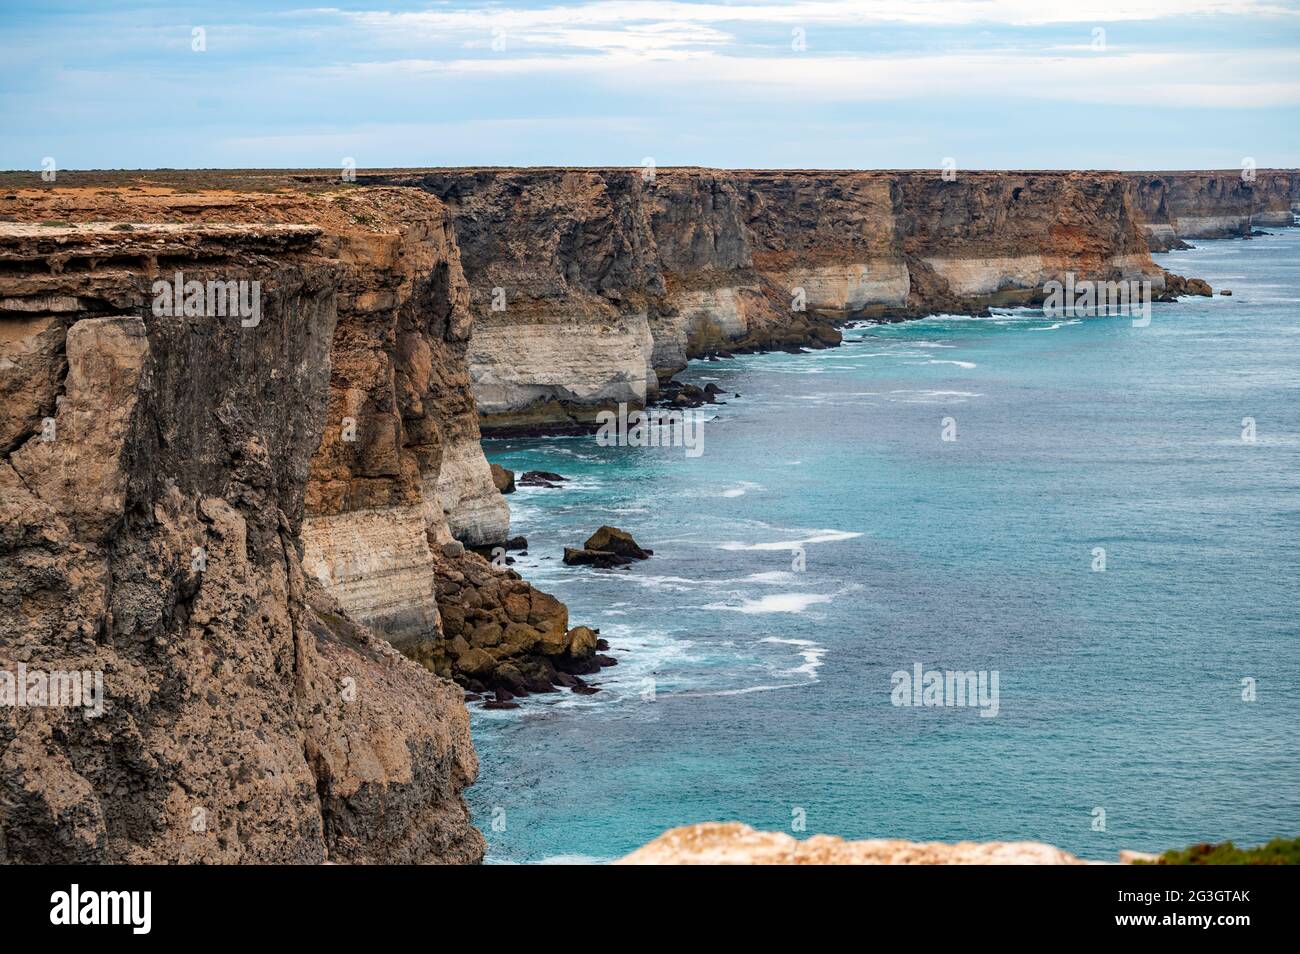 Die Bunda Cliffs, die hier am Head of Bight zu sehen sind, bestehen aus drei Kalksteineinheiten und erstrecken sich 100 km entlang der Great Australian Bight. Stockfoto